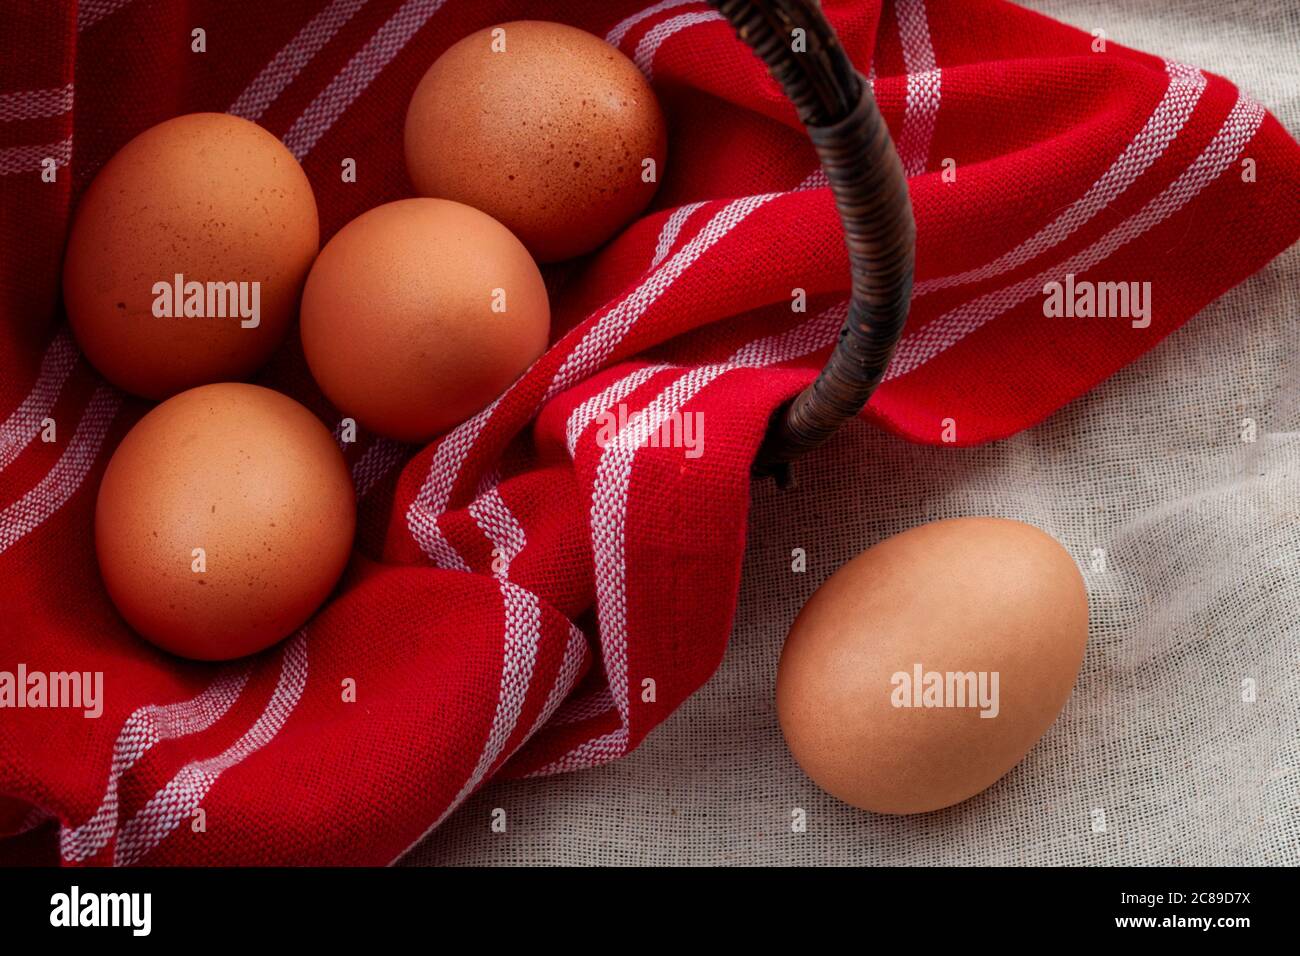 Ingrédients naturels, nourriture saine et cadre rustique avec un panier en osier recouvert d'un tissu rouge vintage retourné d'un côté avec des œufs insid Banque D'Images